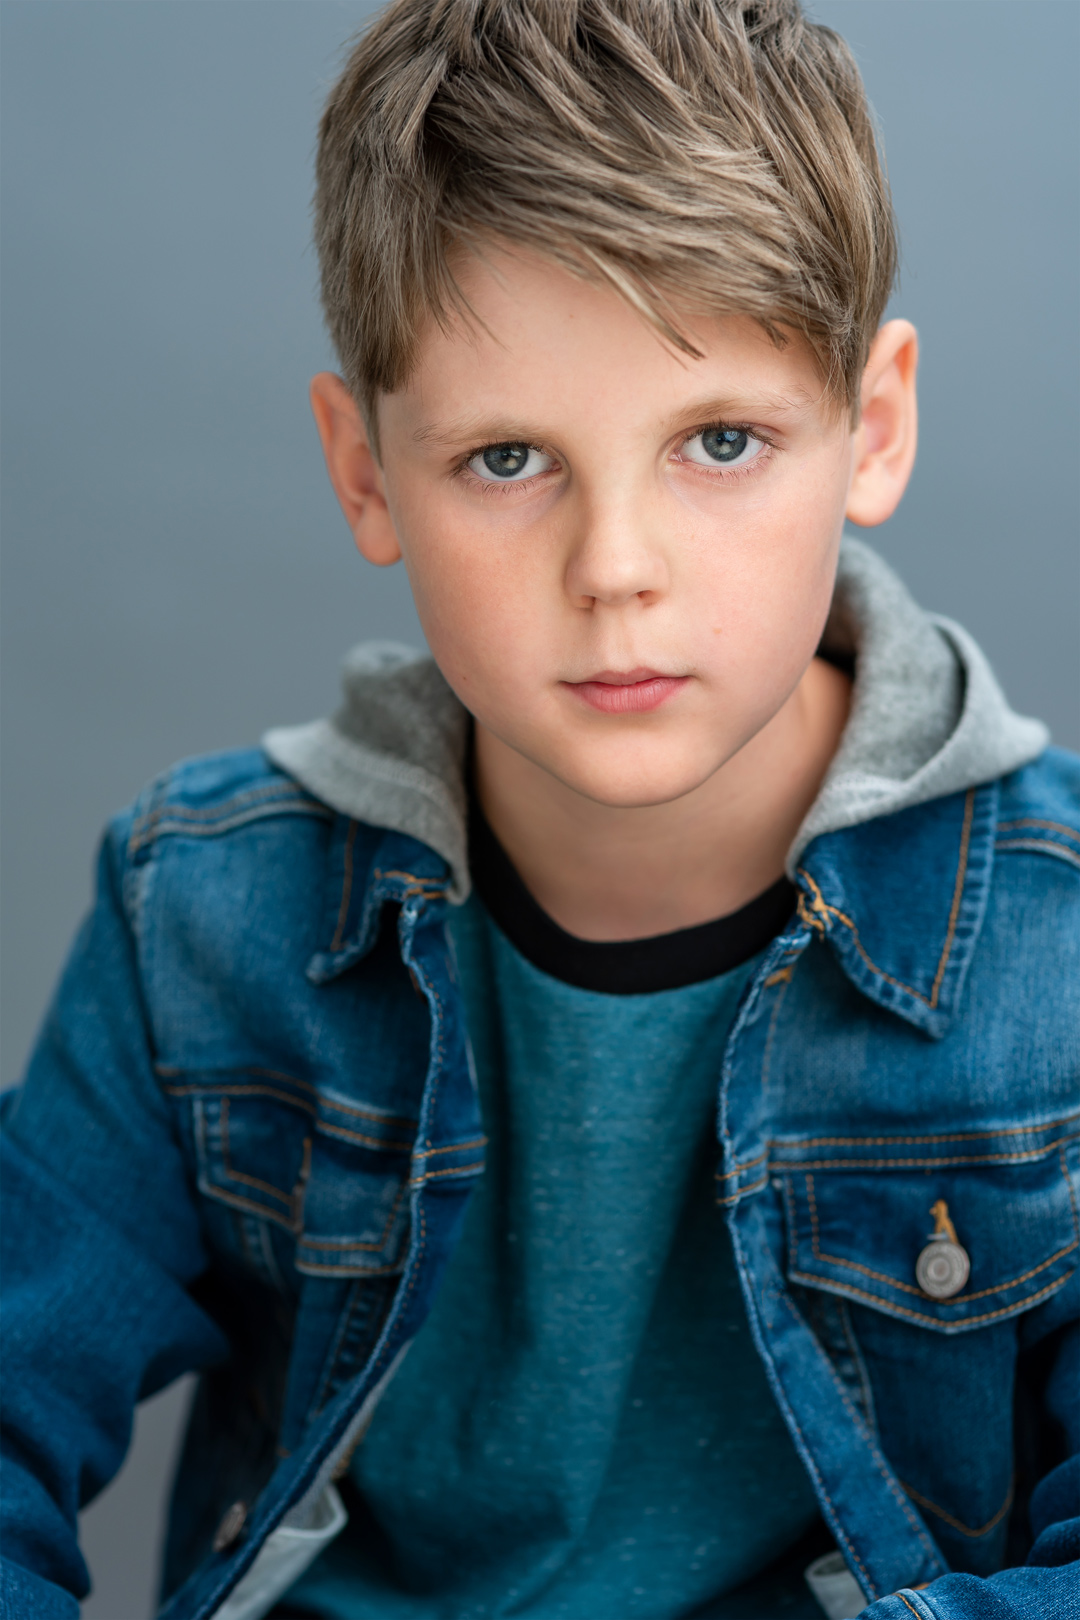 Child actor Camden Bruce